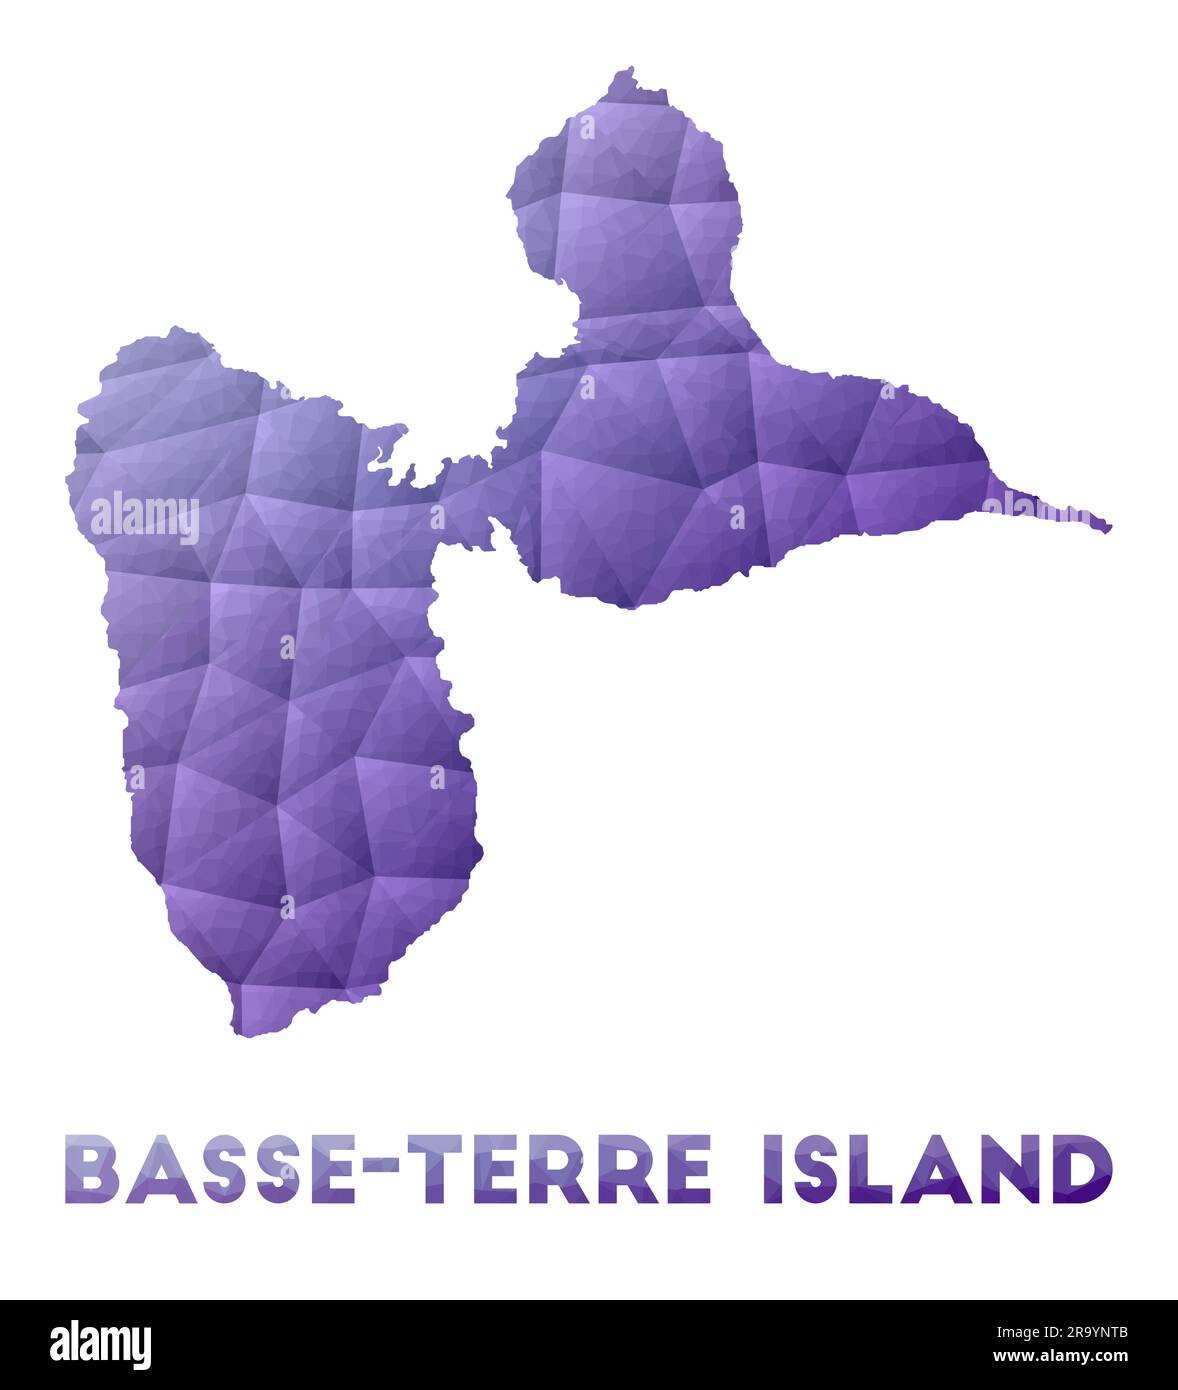 Carte de l'île de Basse-Terre. Illustration poly basse de l'îlot. Motif géométrique violet. Illustration de vecteur polygonal. Illustration de Vecteur